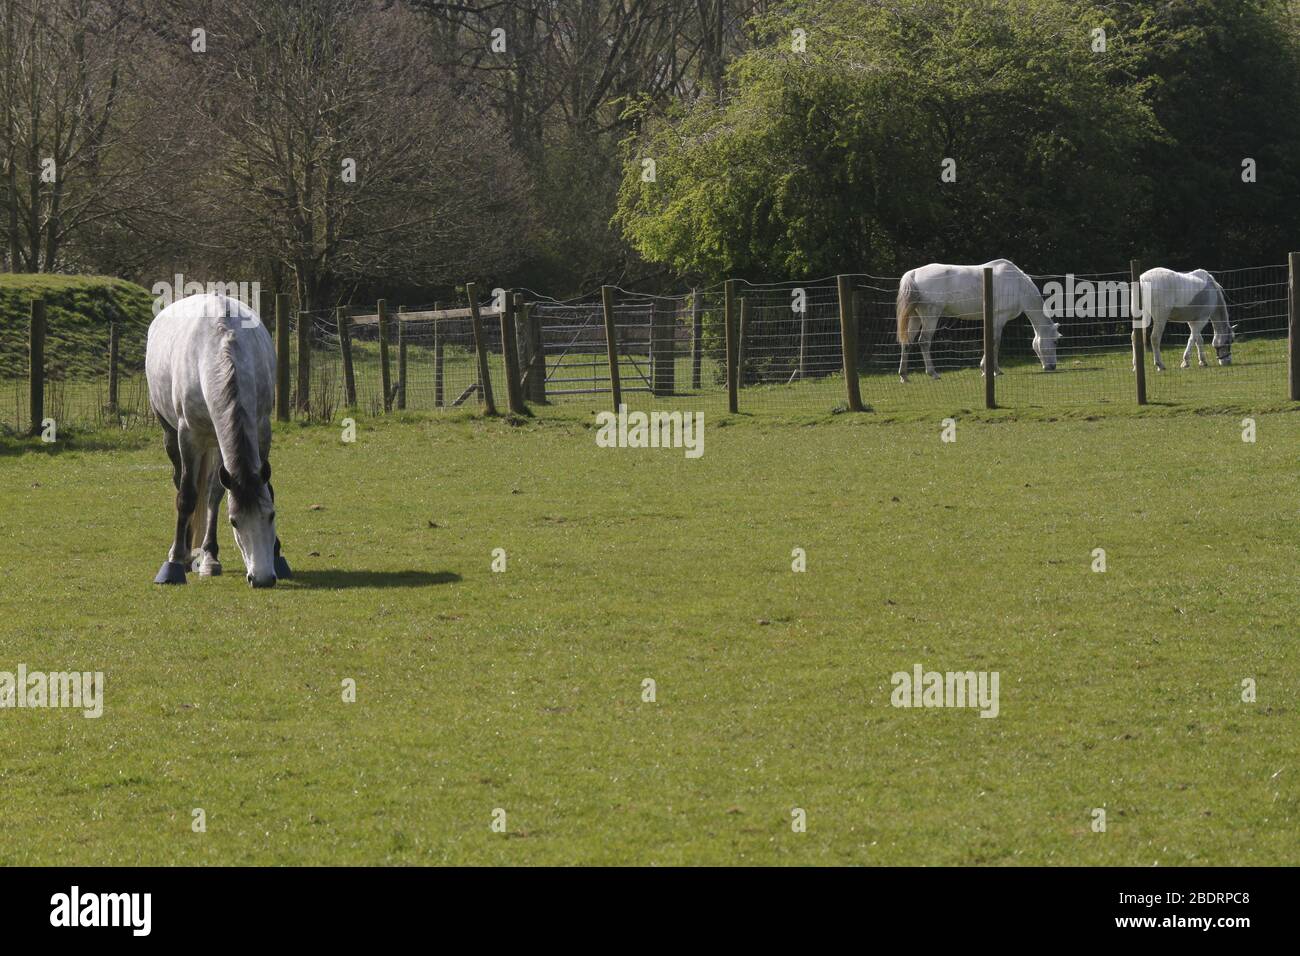 White horse, UK Stock Photo